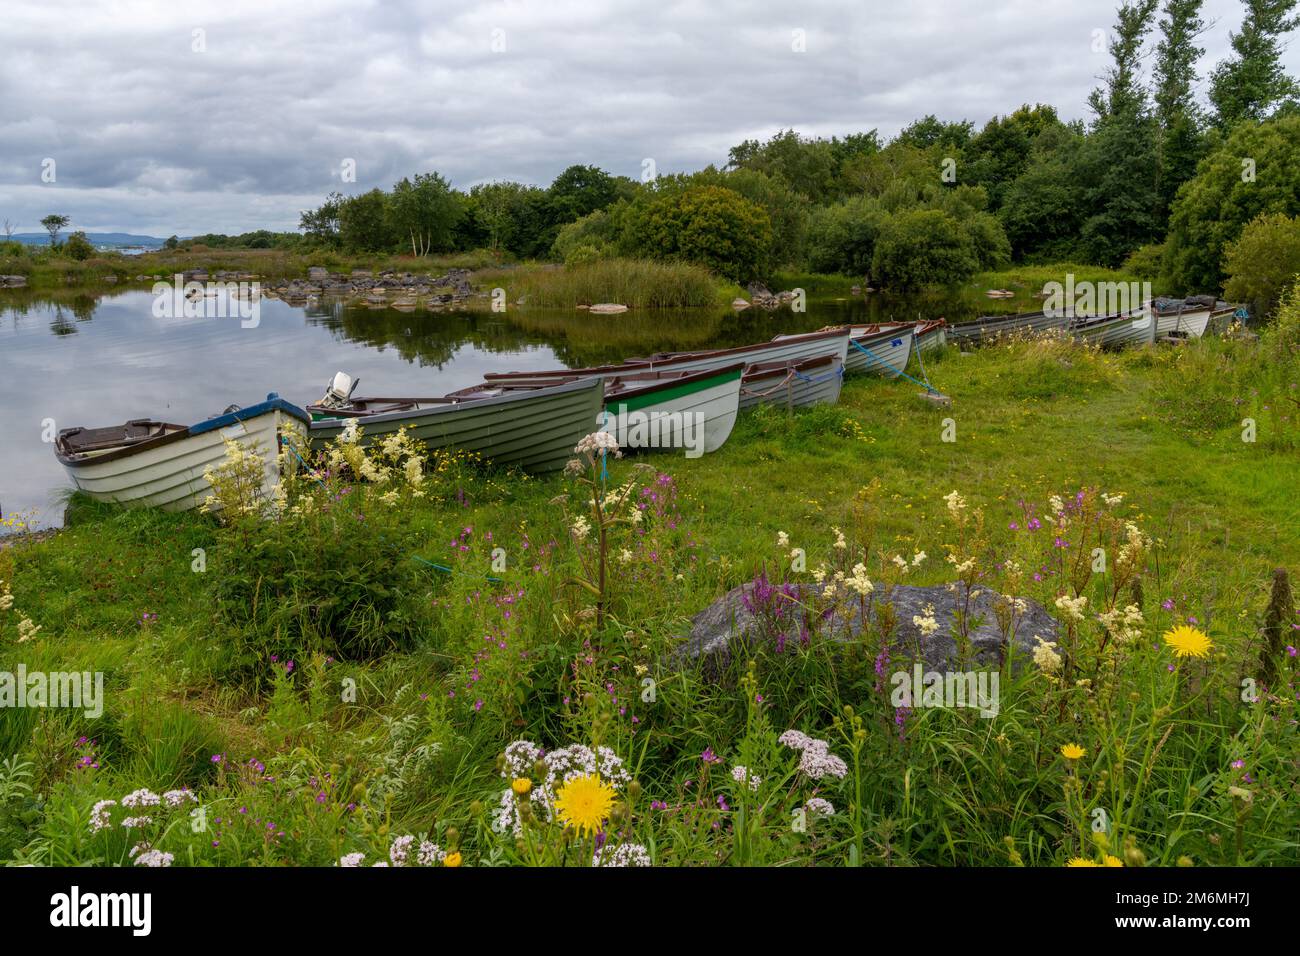 Seeufer mit vielen hölzernen Fischerbooten am Ufer des Lough Corrib Sees mit bunten Sommerwildblumen im Vordergrund Stockfoto